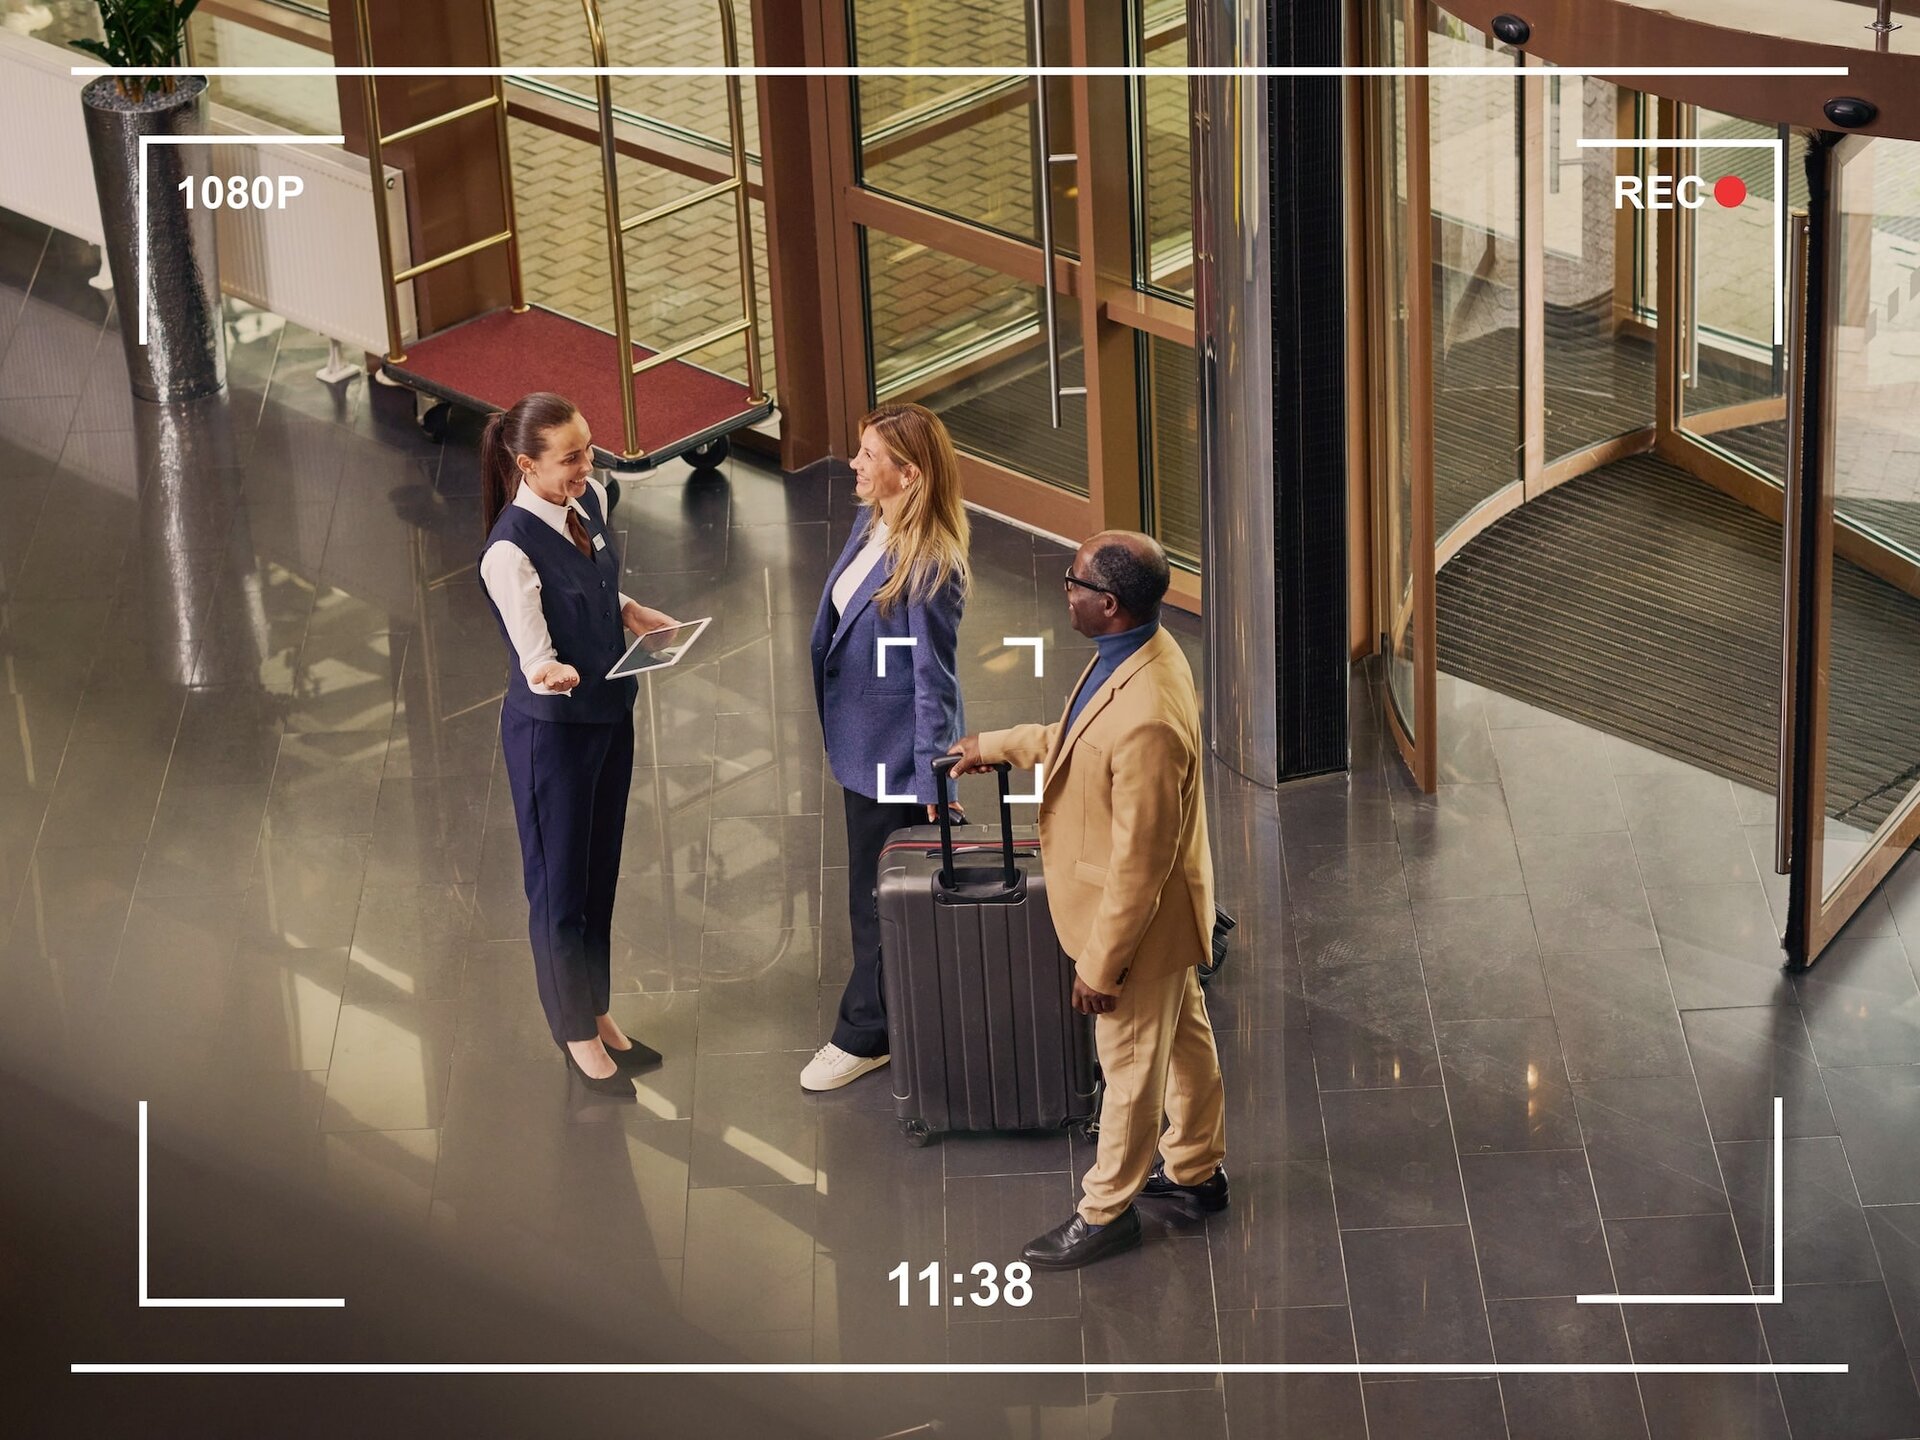 Kamerabild im Hoteleingang. Paar checkt per Tablet ein. Zuverlässige Erfassung aller Vorfälle und einfache Steuerung.